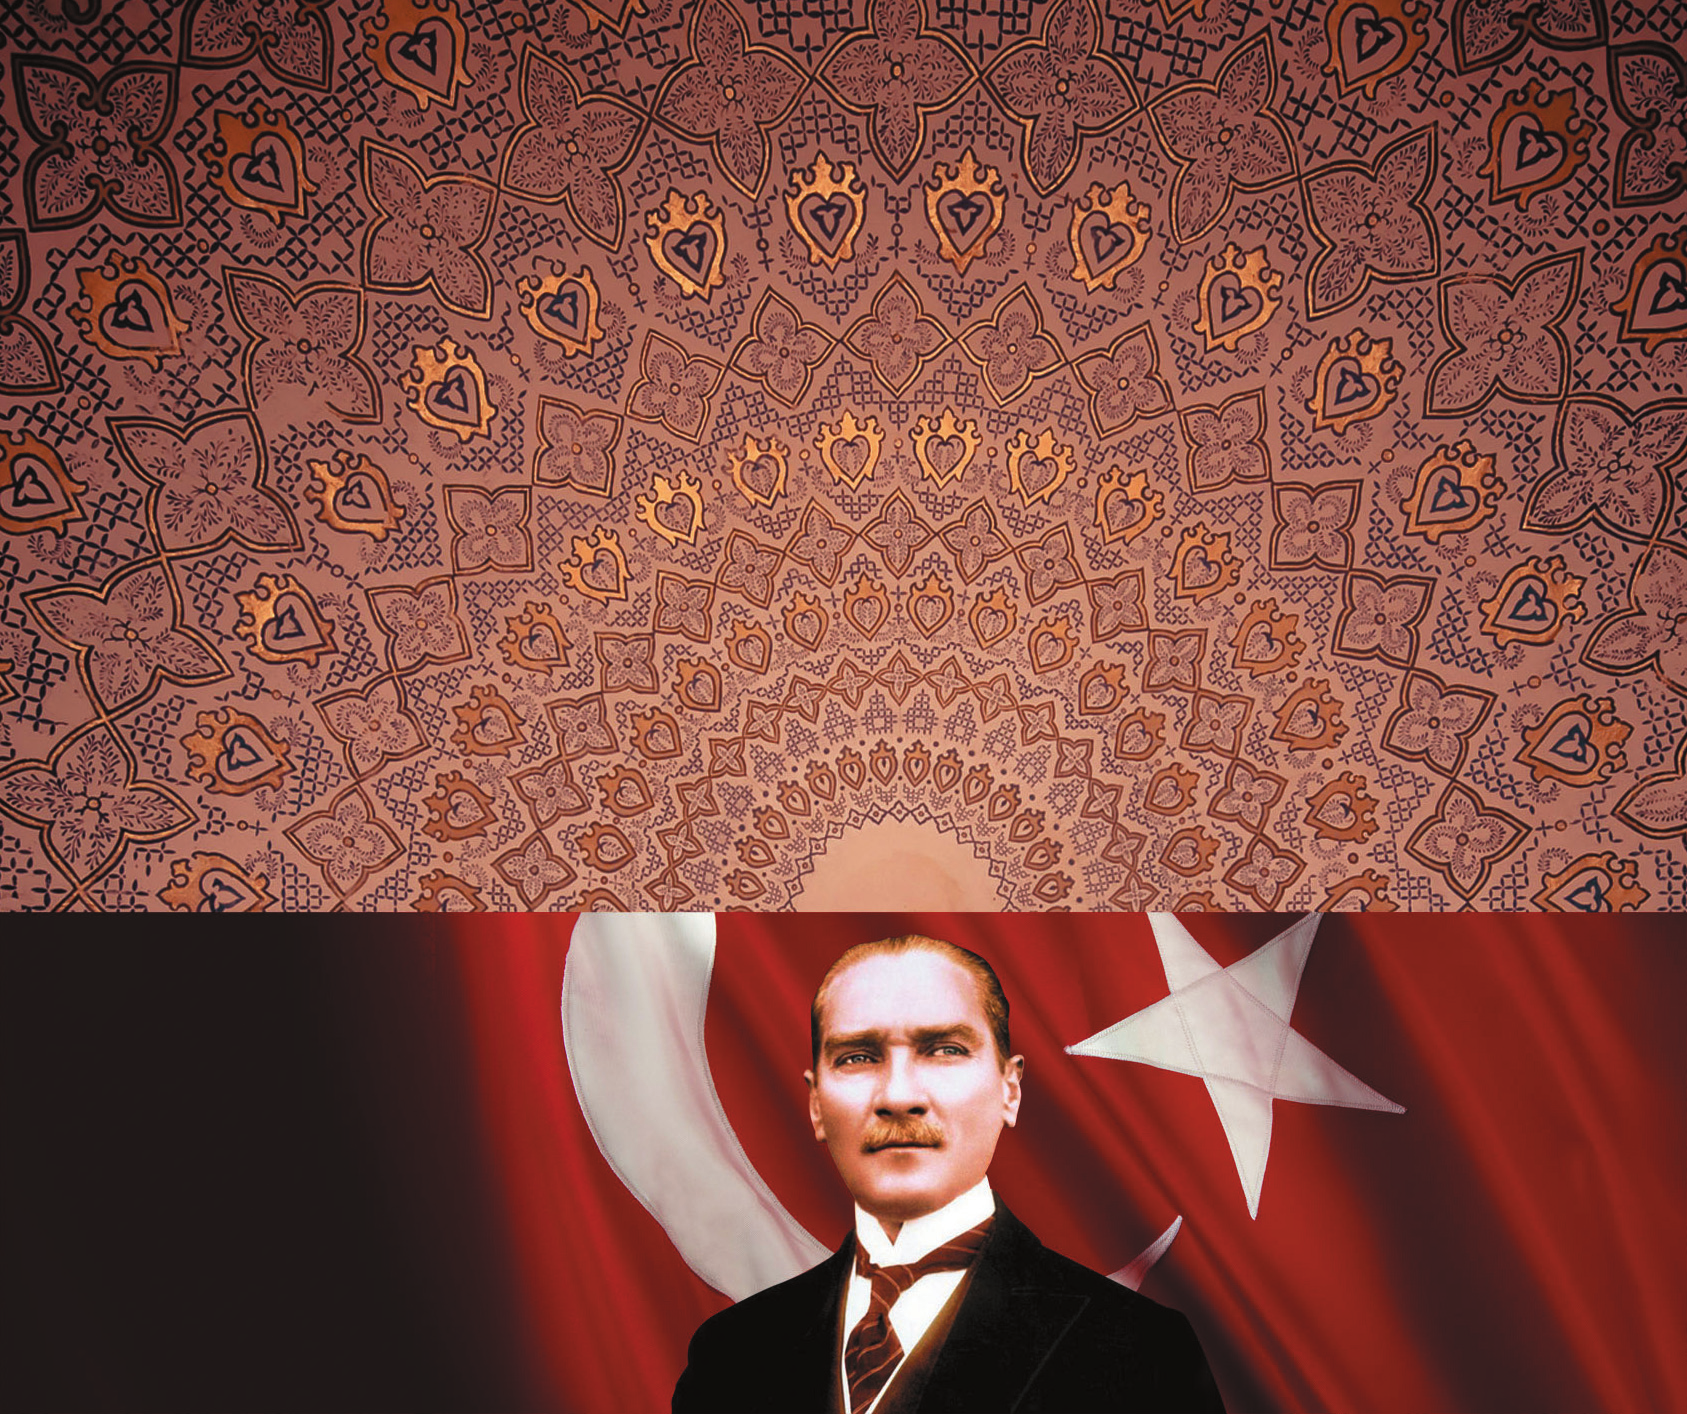 BD N SAN 2013 Sakl Tarih Sinan Meydan Atatürk ün slam Dinine Hizmetleri 1 Kendine Özgü Sade Bir Dindar Atatürk düﬂmanlar n n öteden beri Atatürk e sald rmak için kulland klar en önemli yöntem,